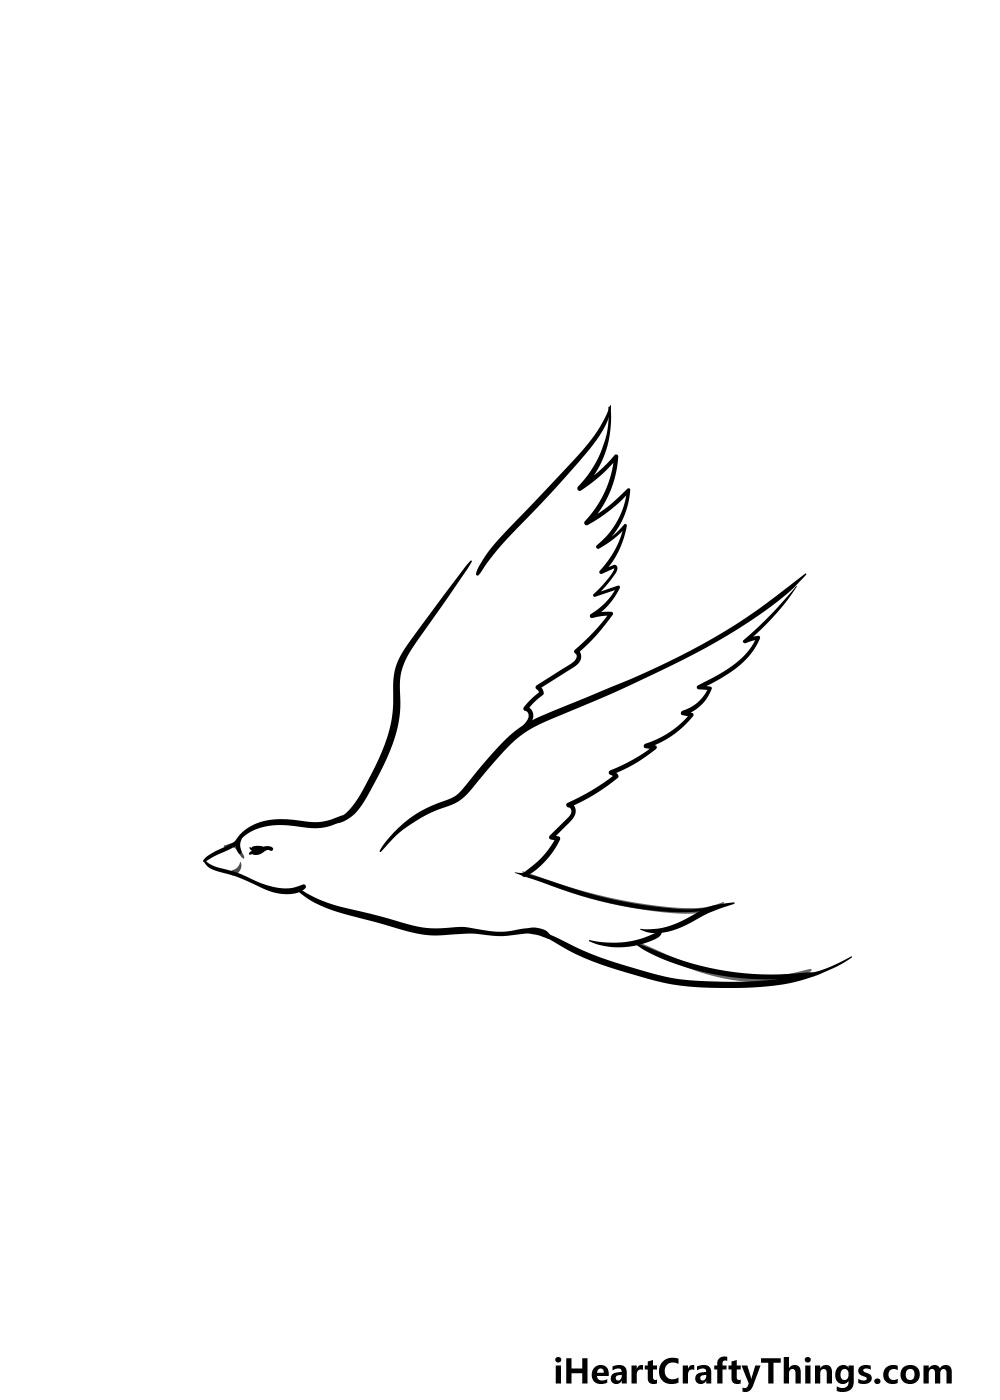 Bird Flying Drawing